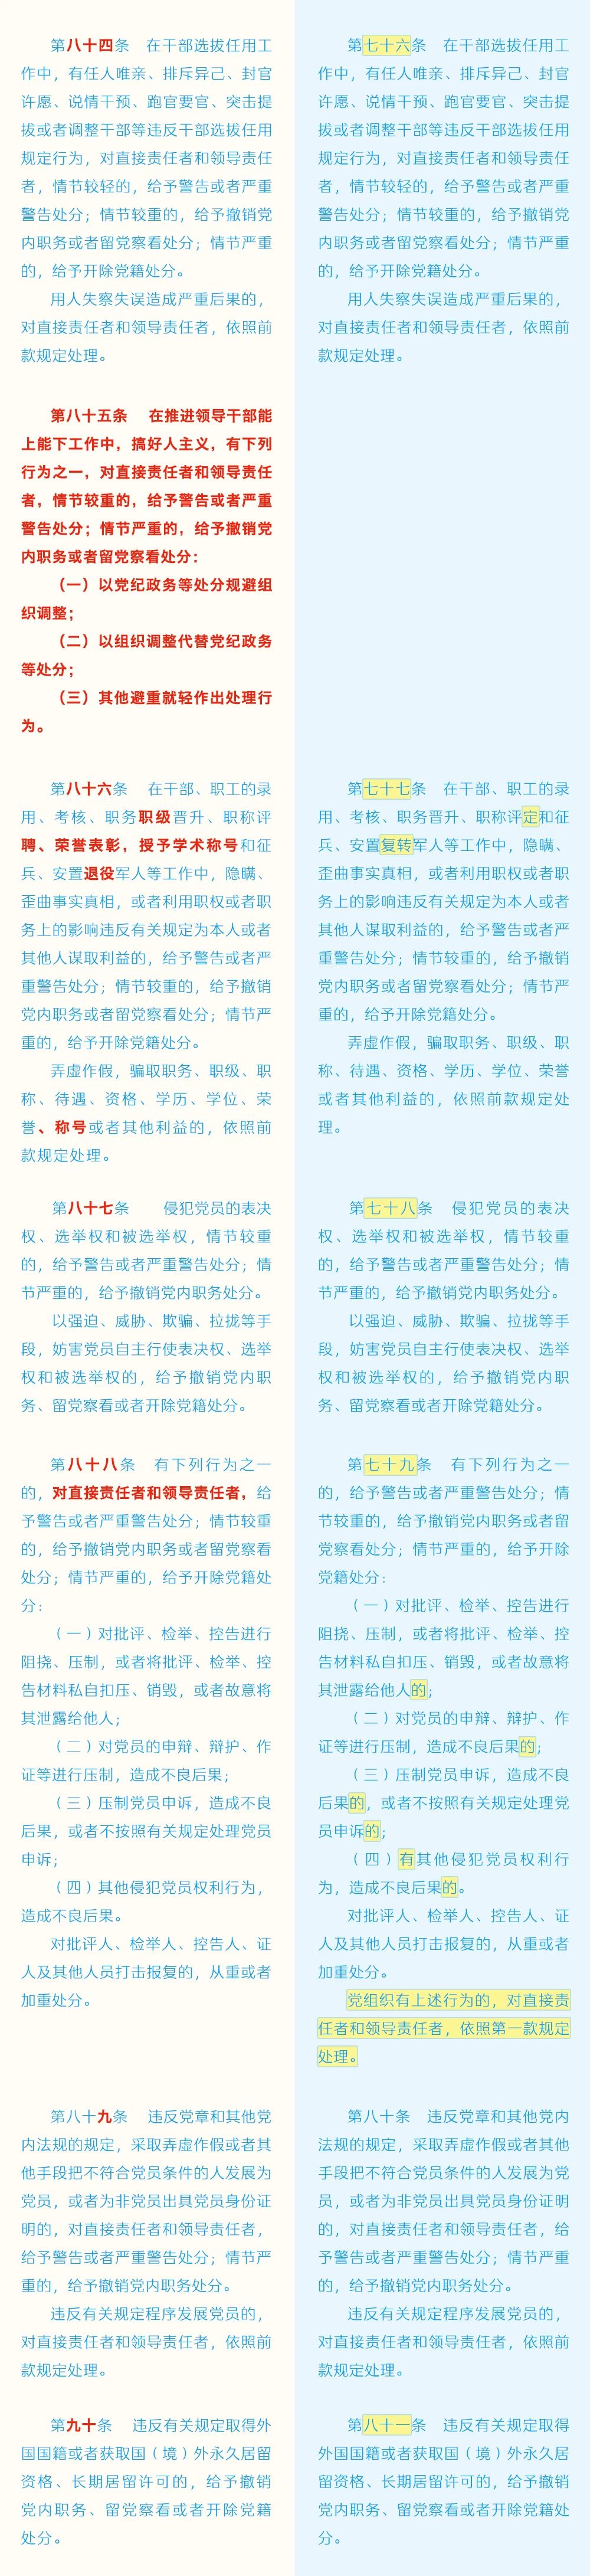 《中国共产党纪律处分条例》修订条文对照表13.jpg